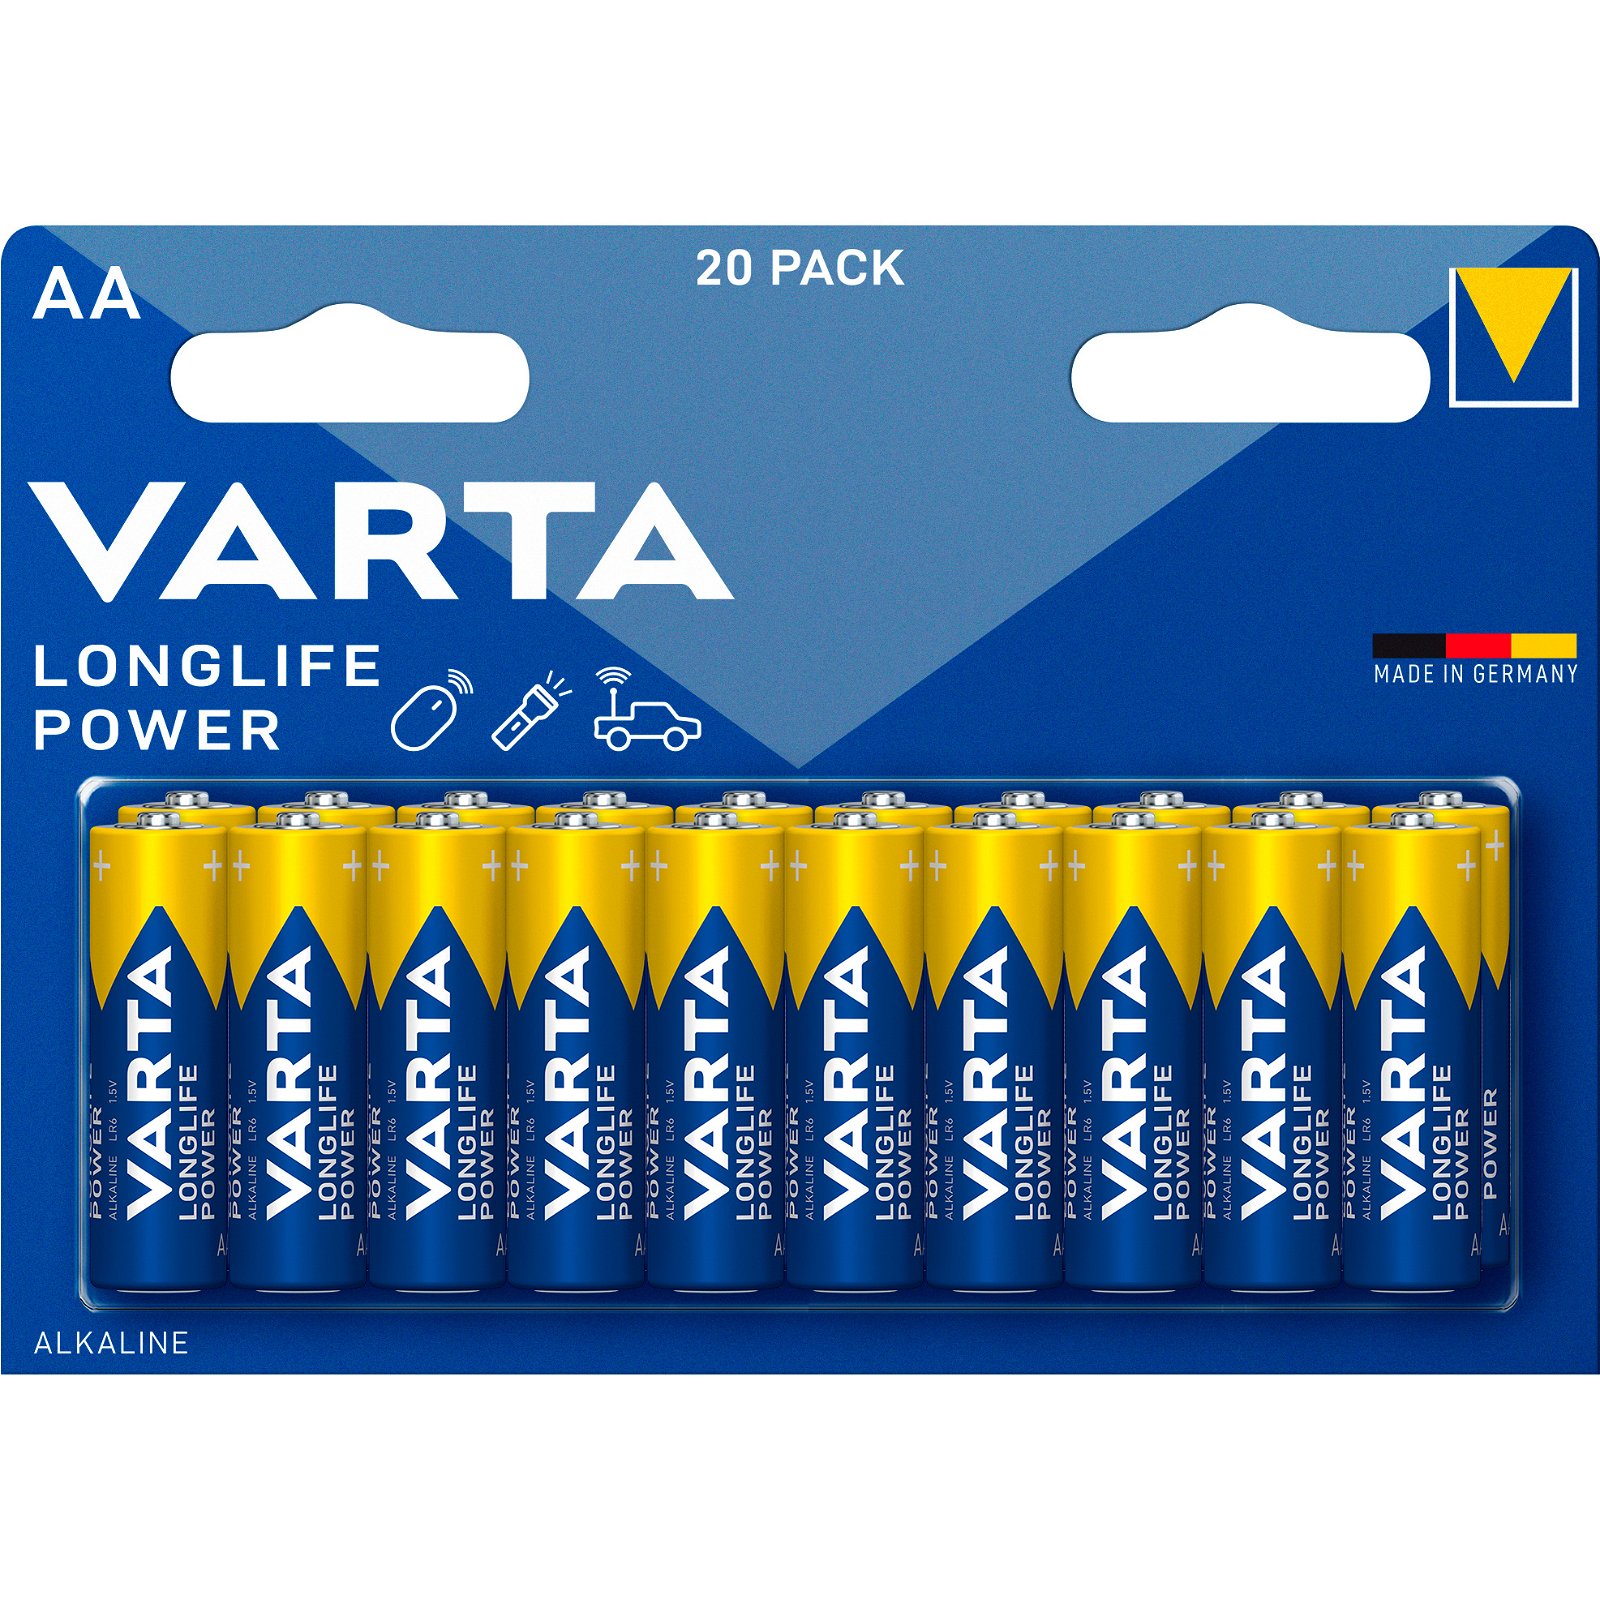 VARTA LongLife Power batteri AA/LR6 1.5 v 20 stk